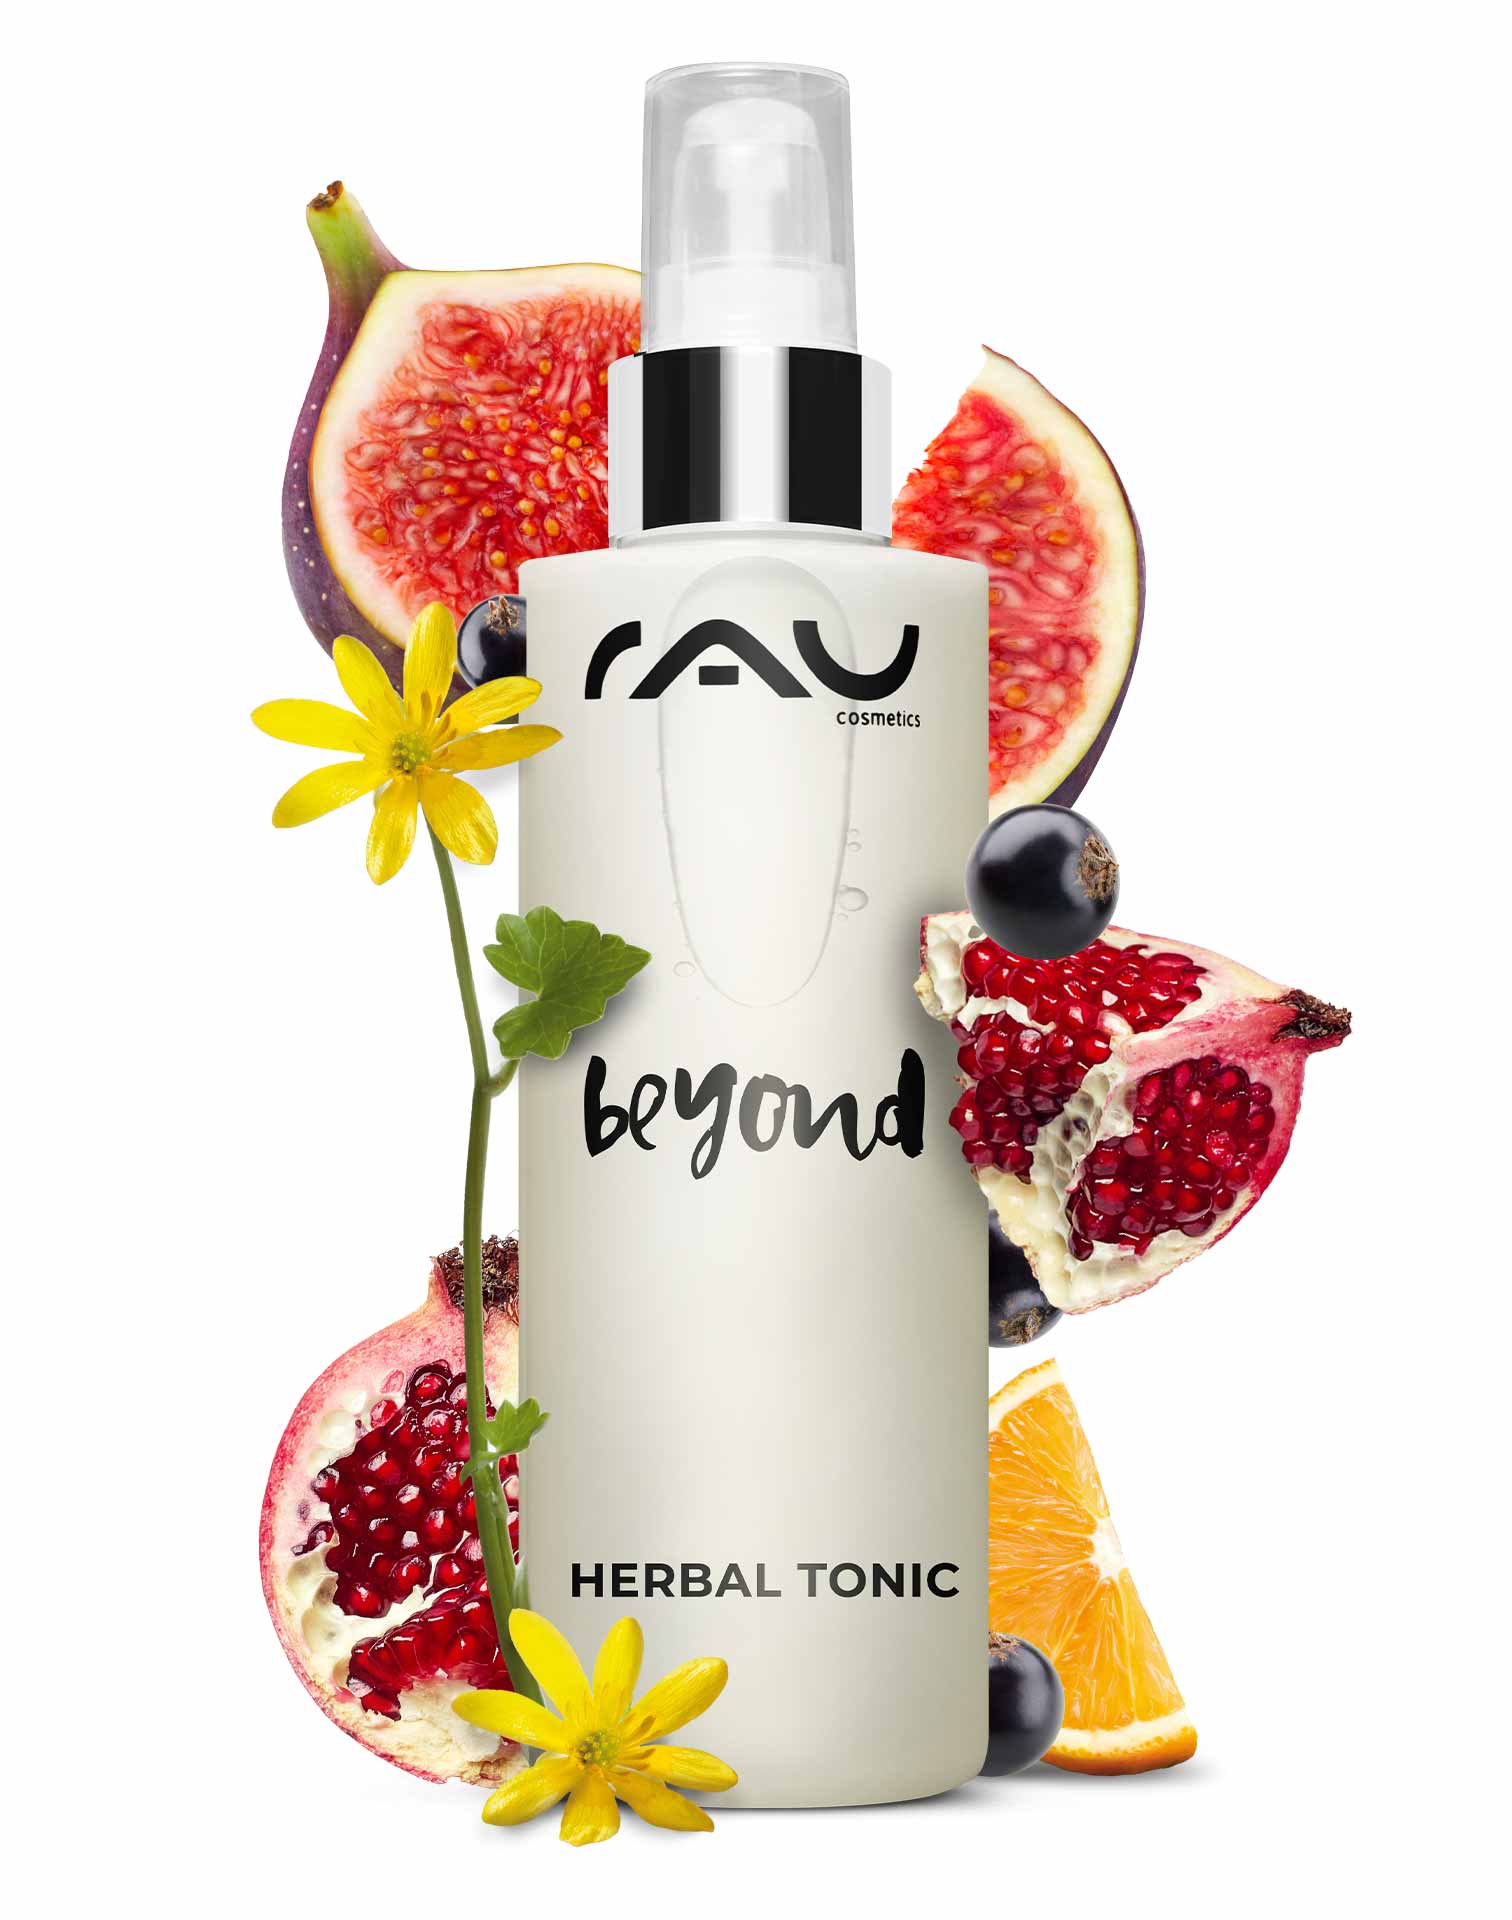 Beyond Herbal Tonic 200 ml Tonique cosmétique naturel